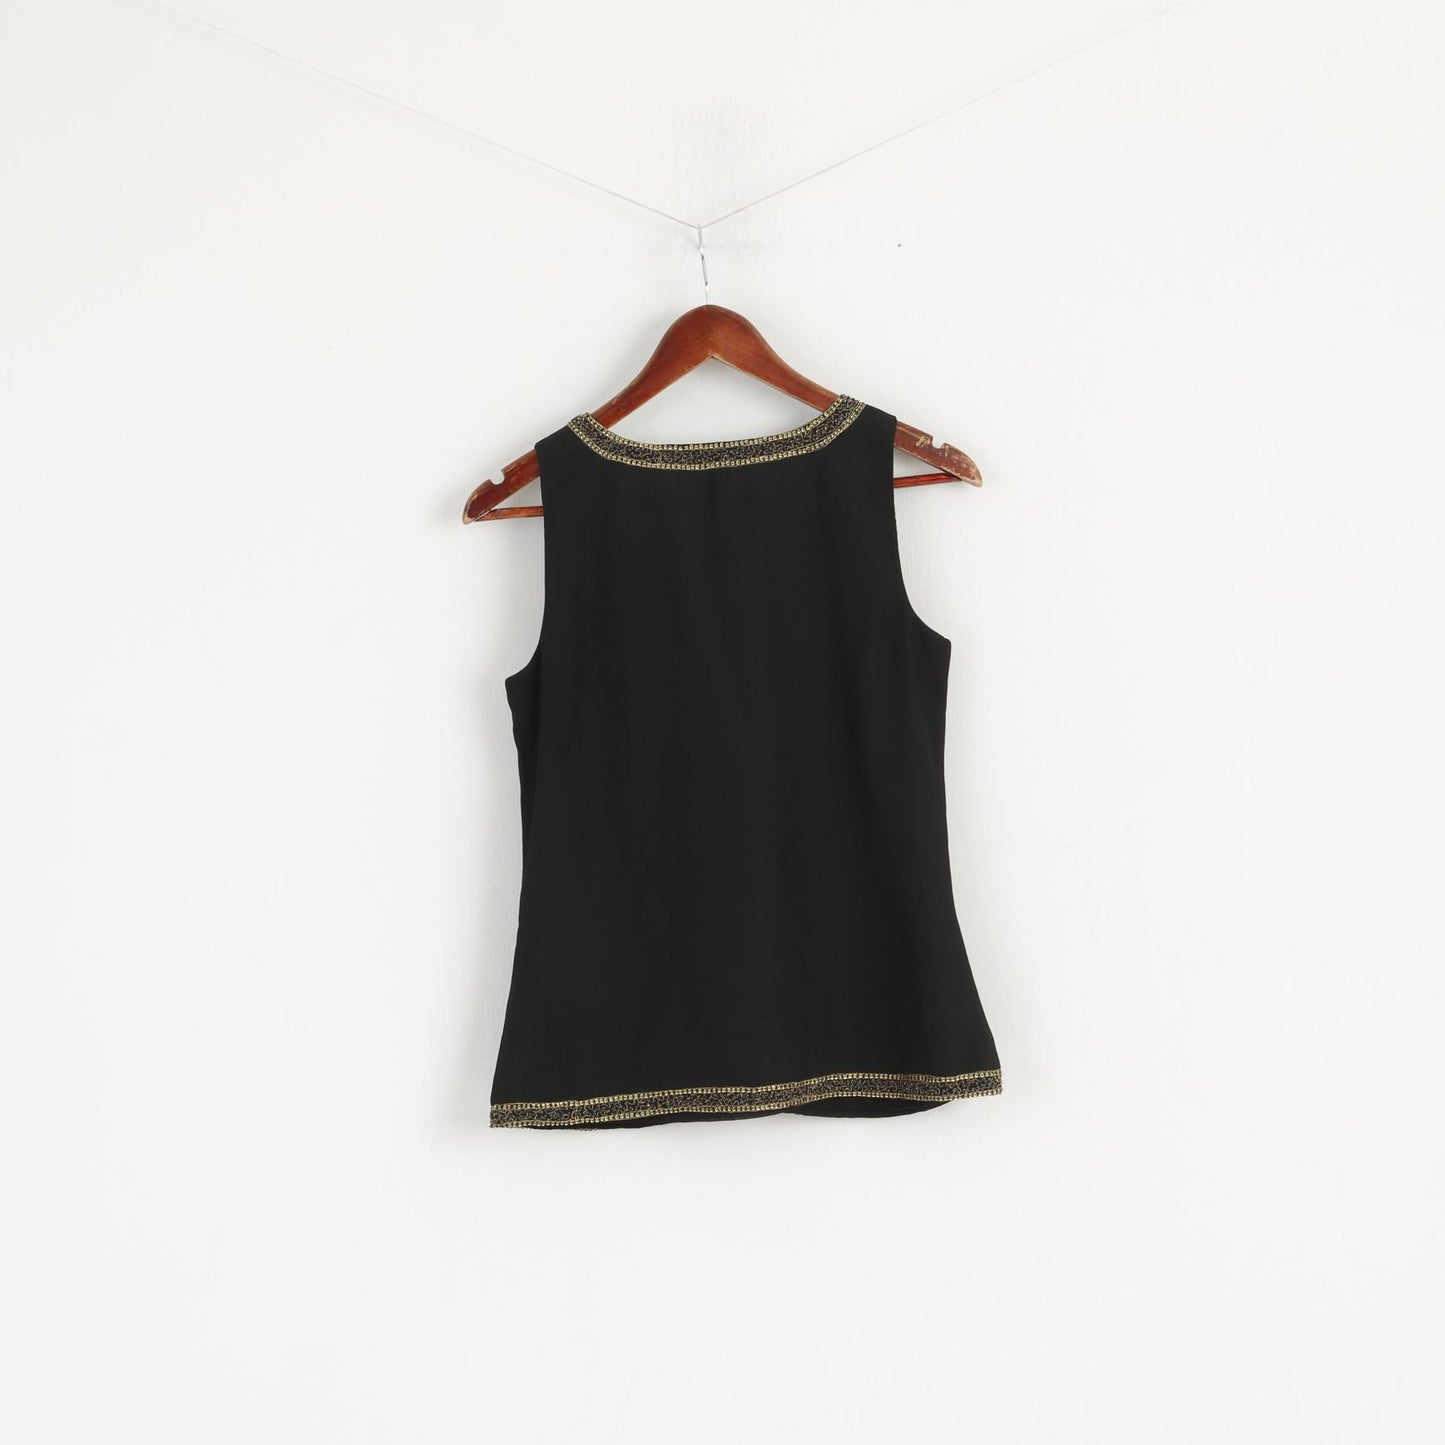 Lauren Ralph Lauren Women 2 S Shirt Black Soft V Neck Gold Detailed Elegant Tank Top